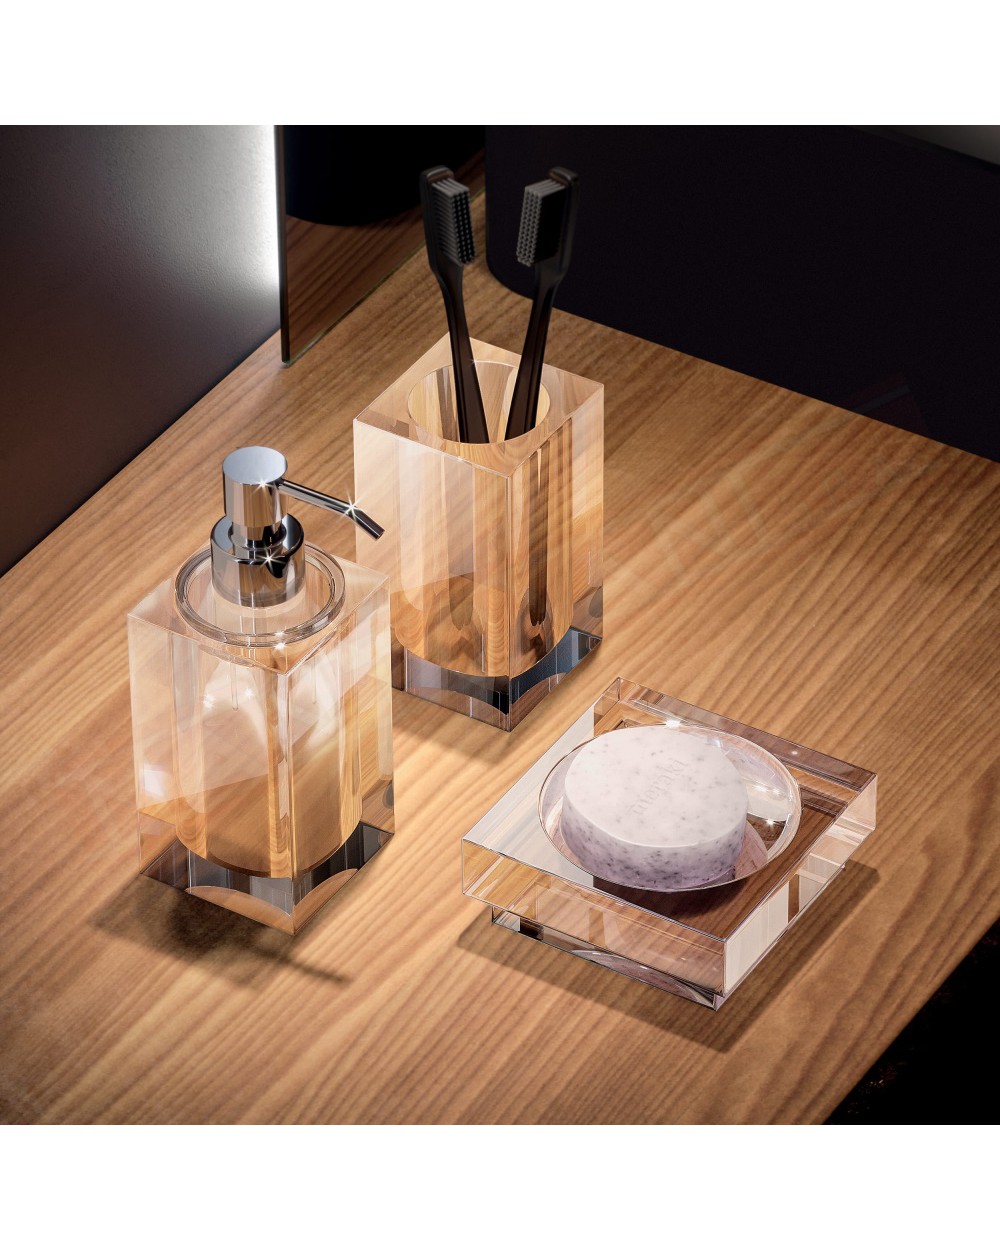 Tl.bath Vanity portaspazzolini da appoggio 65x115x65 mm in plexyglas trasparente e ottone cromato